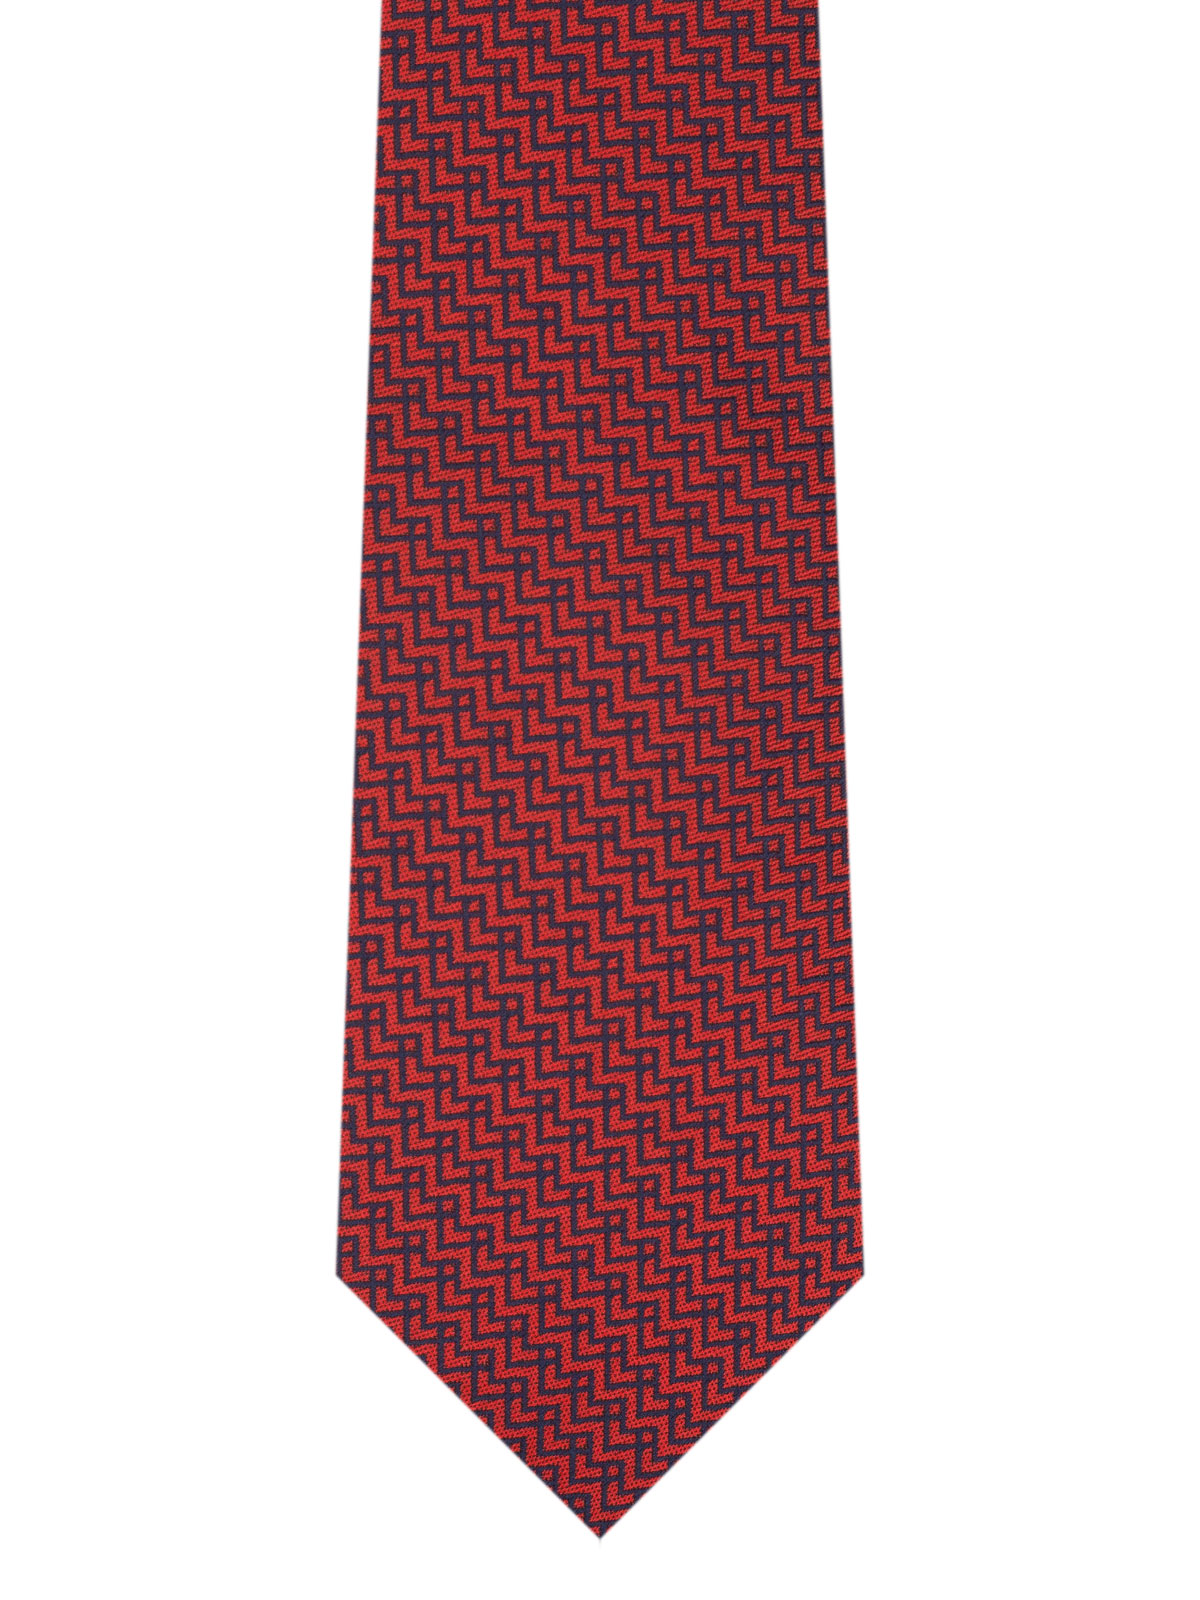 Cravată roșie pe linii albastre în zigz - 10187 - € 14.06 img2